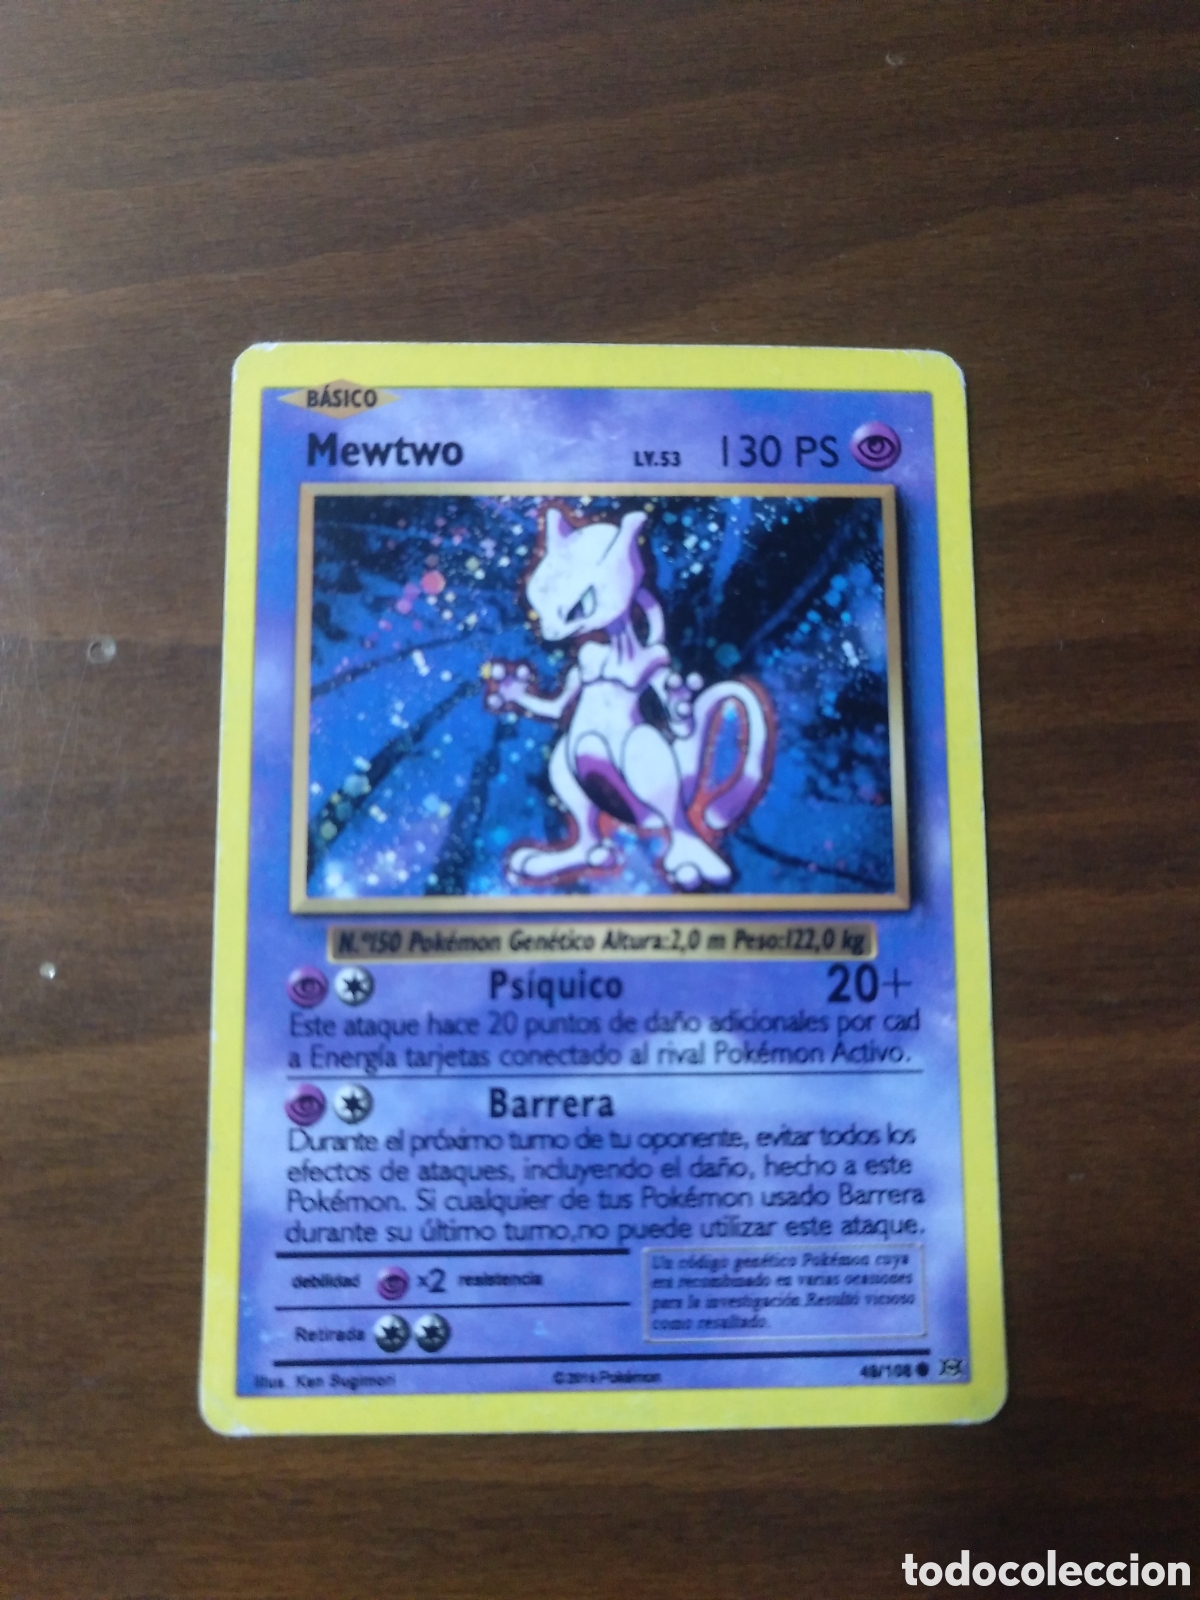 Carta Pokémon Mewtwo rara holográfica